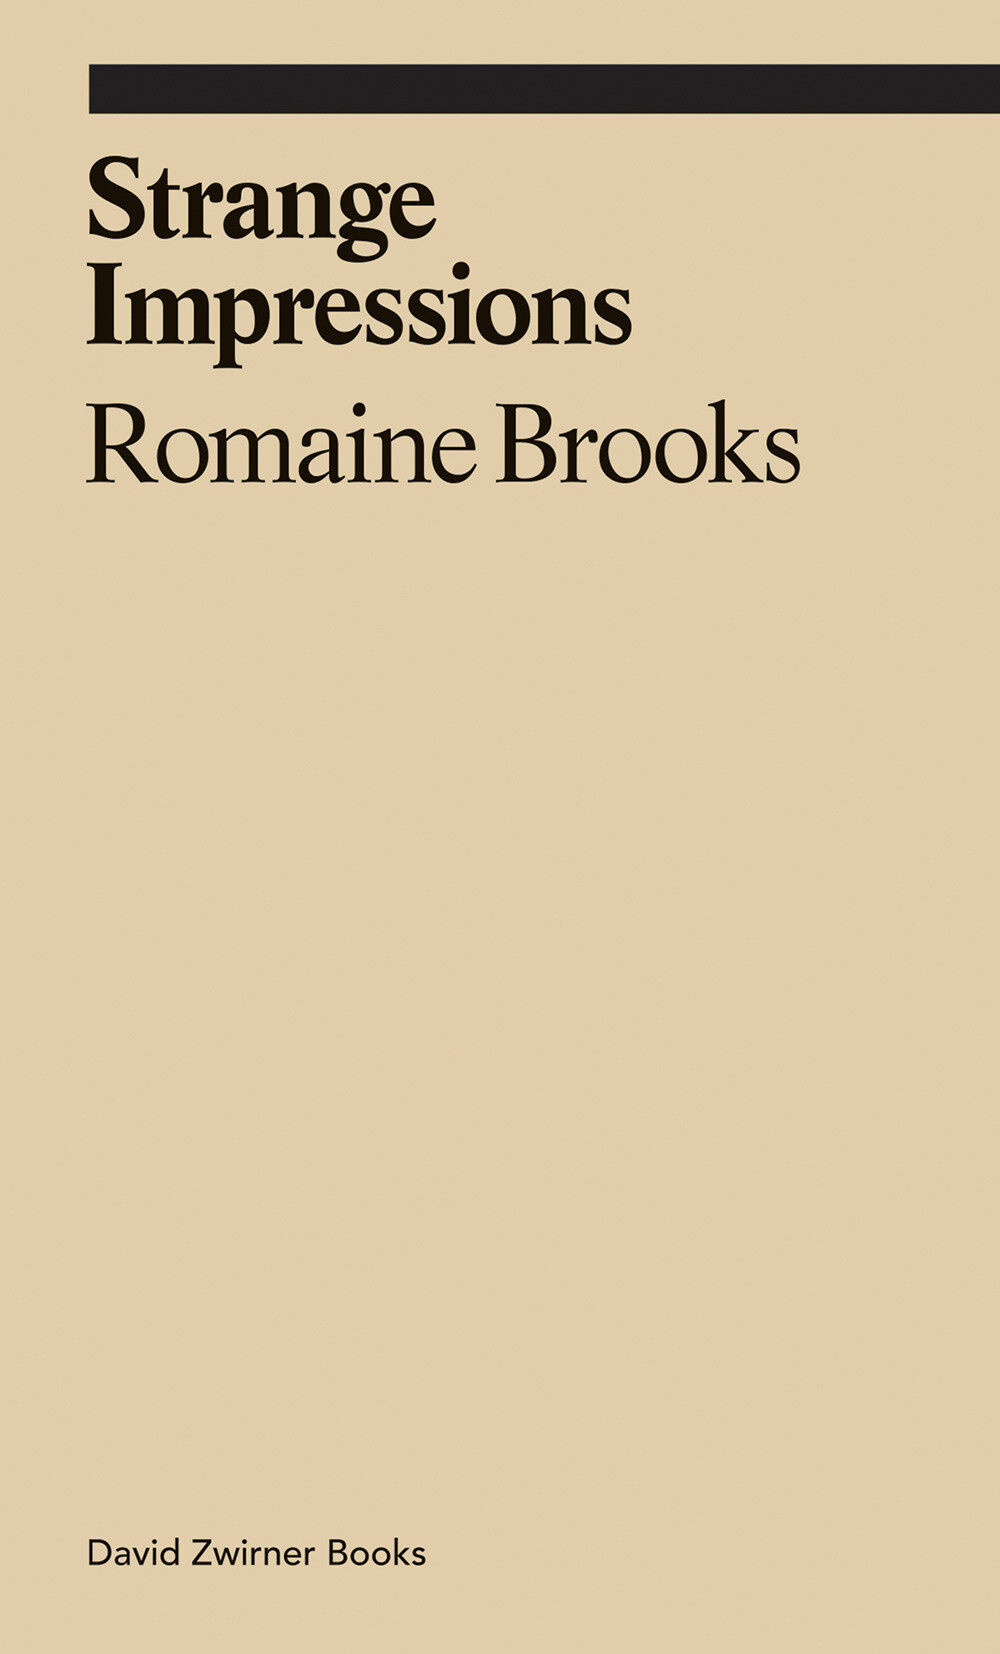 Romaine Brooks